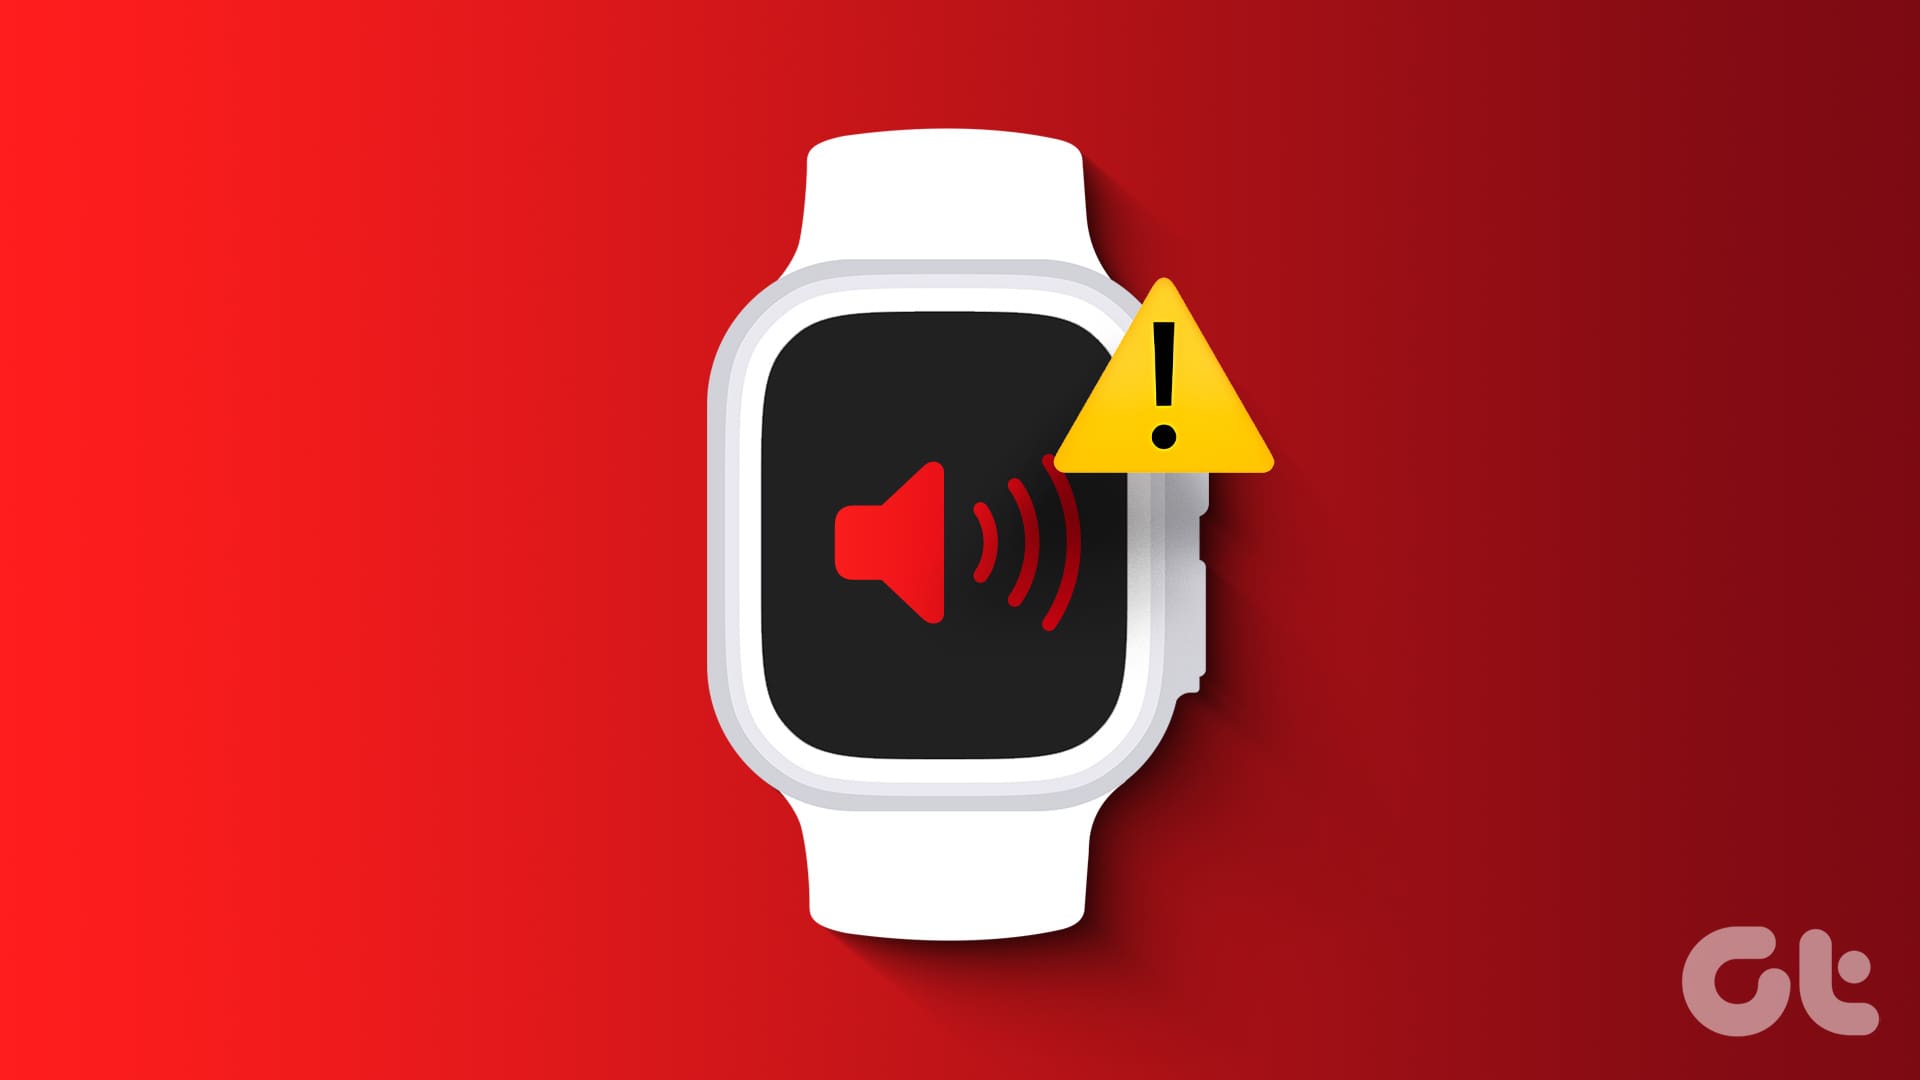 Speaker not working on Apple Watch